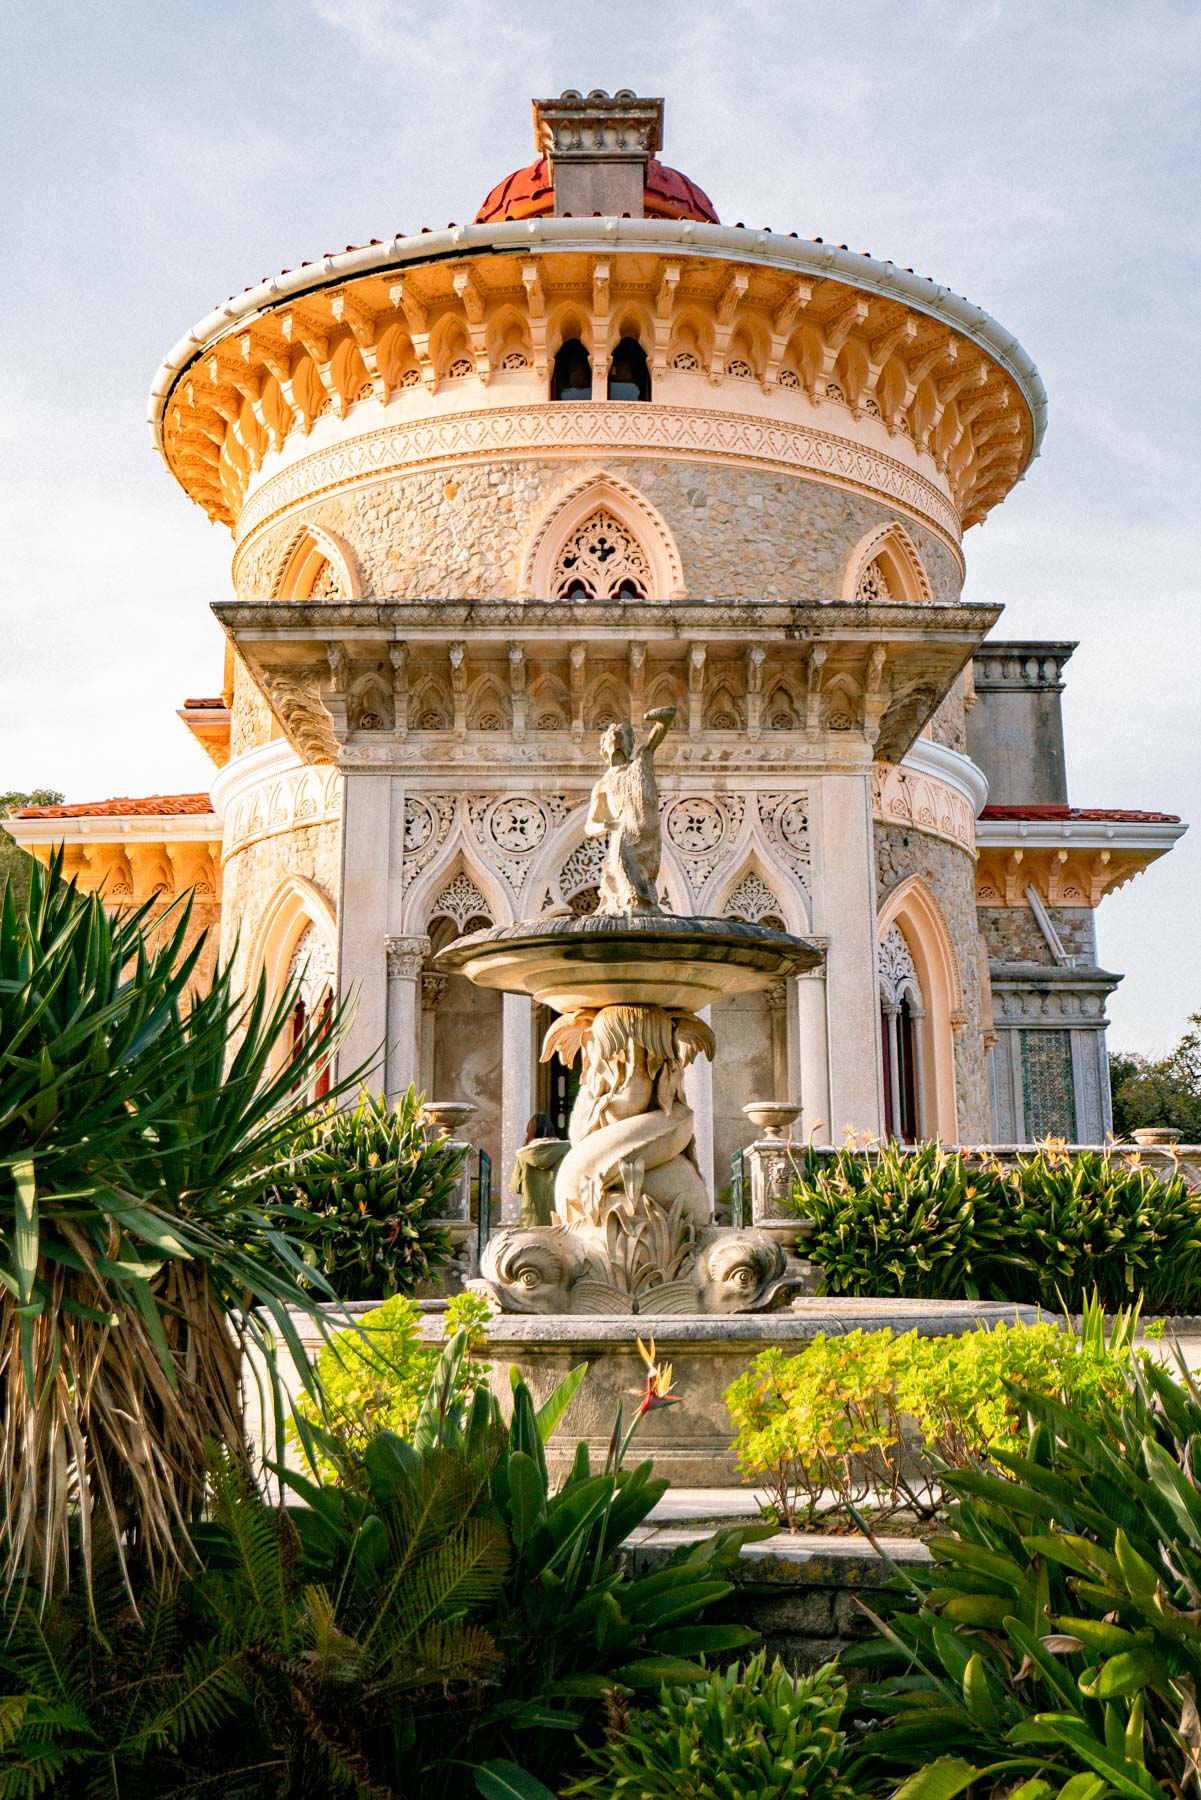 Monserrat Palace Sintra
Best Castles in Sintra Portugal 